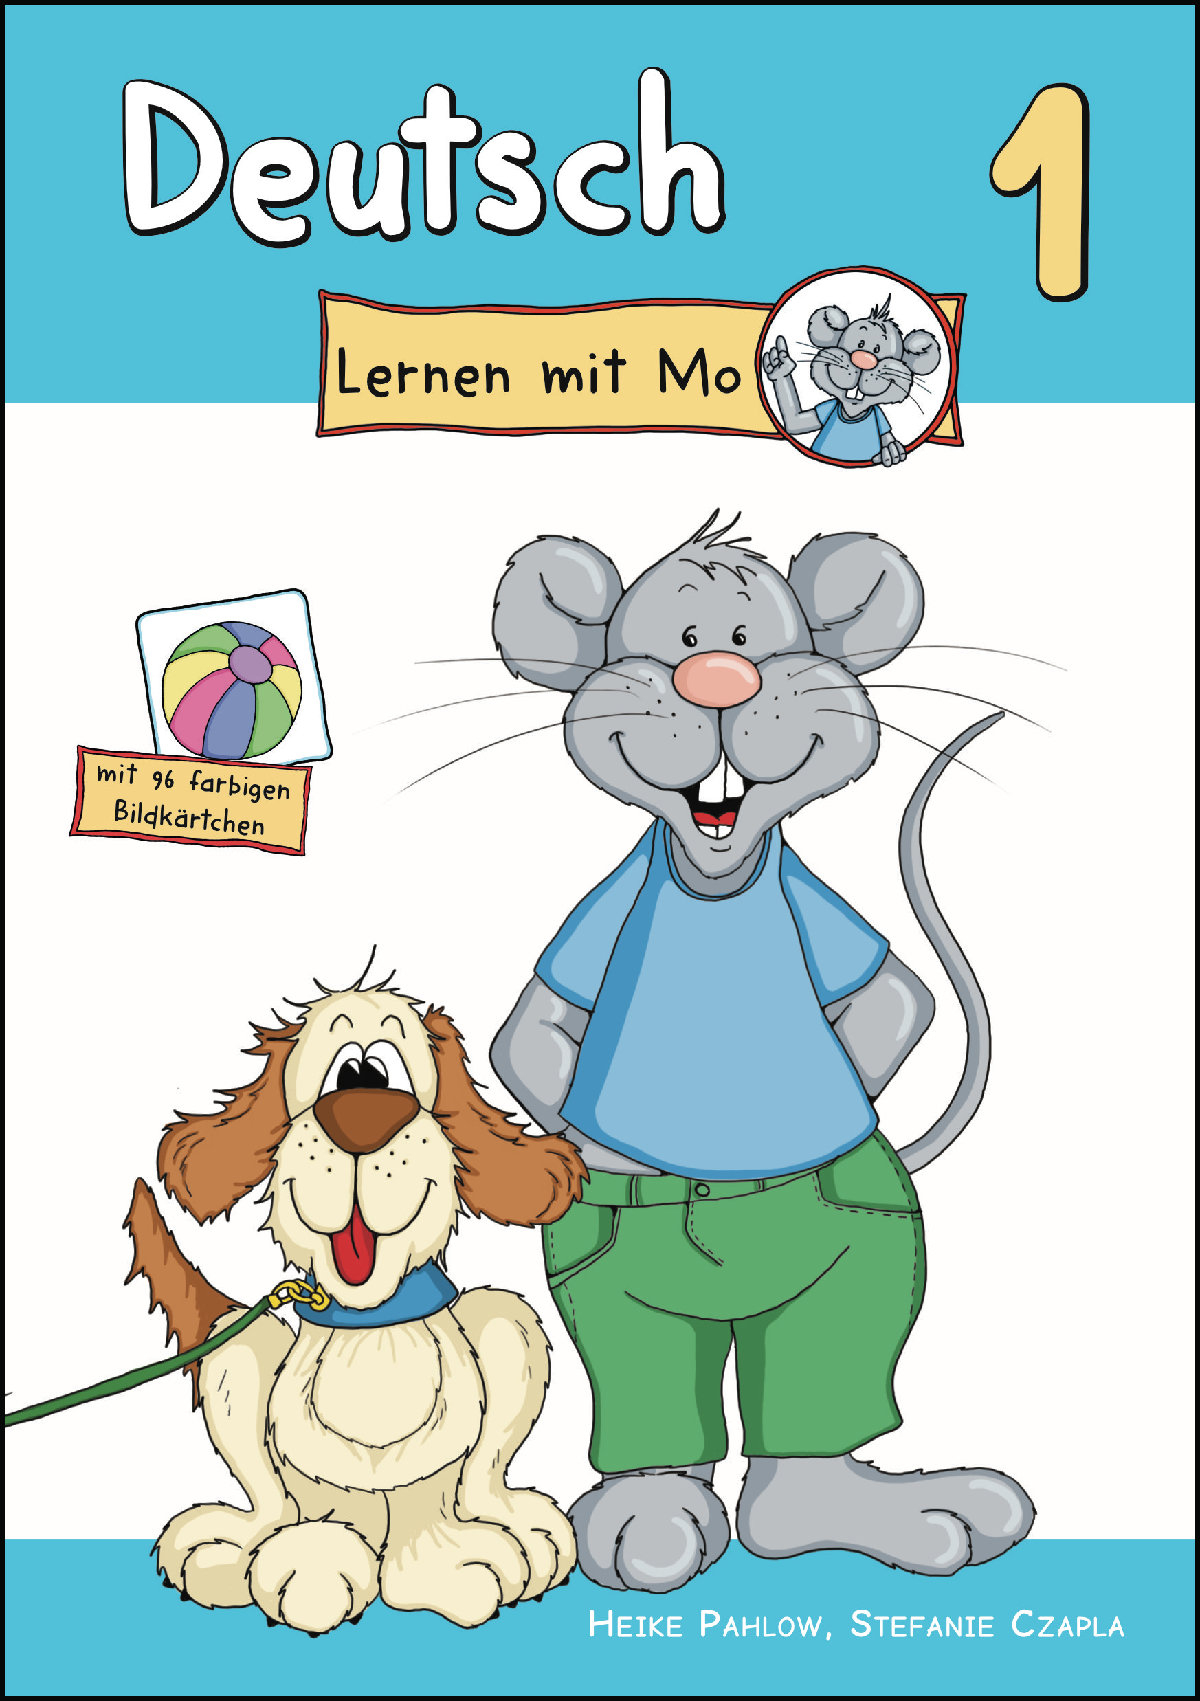 Unterrichtsmaterialien Für Deutsch Als Fremdsprache (Daf) - Lingolia innen Kinder Bilder Unterhalb Englisch,